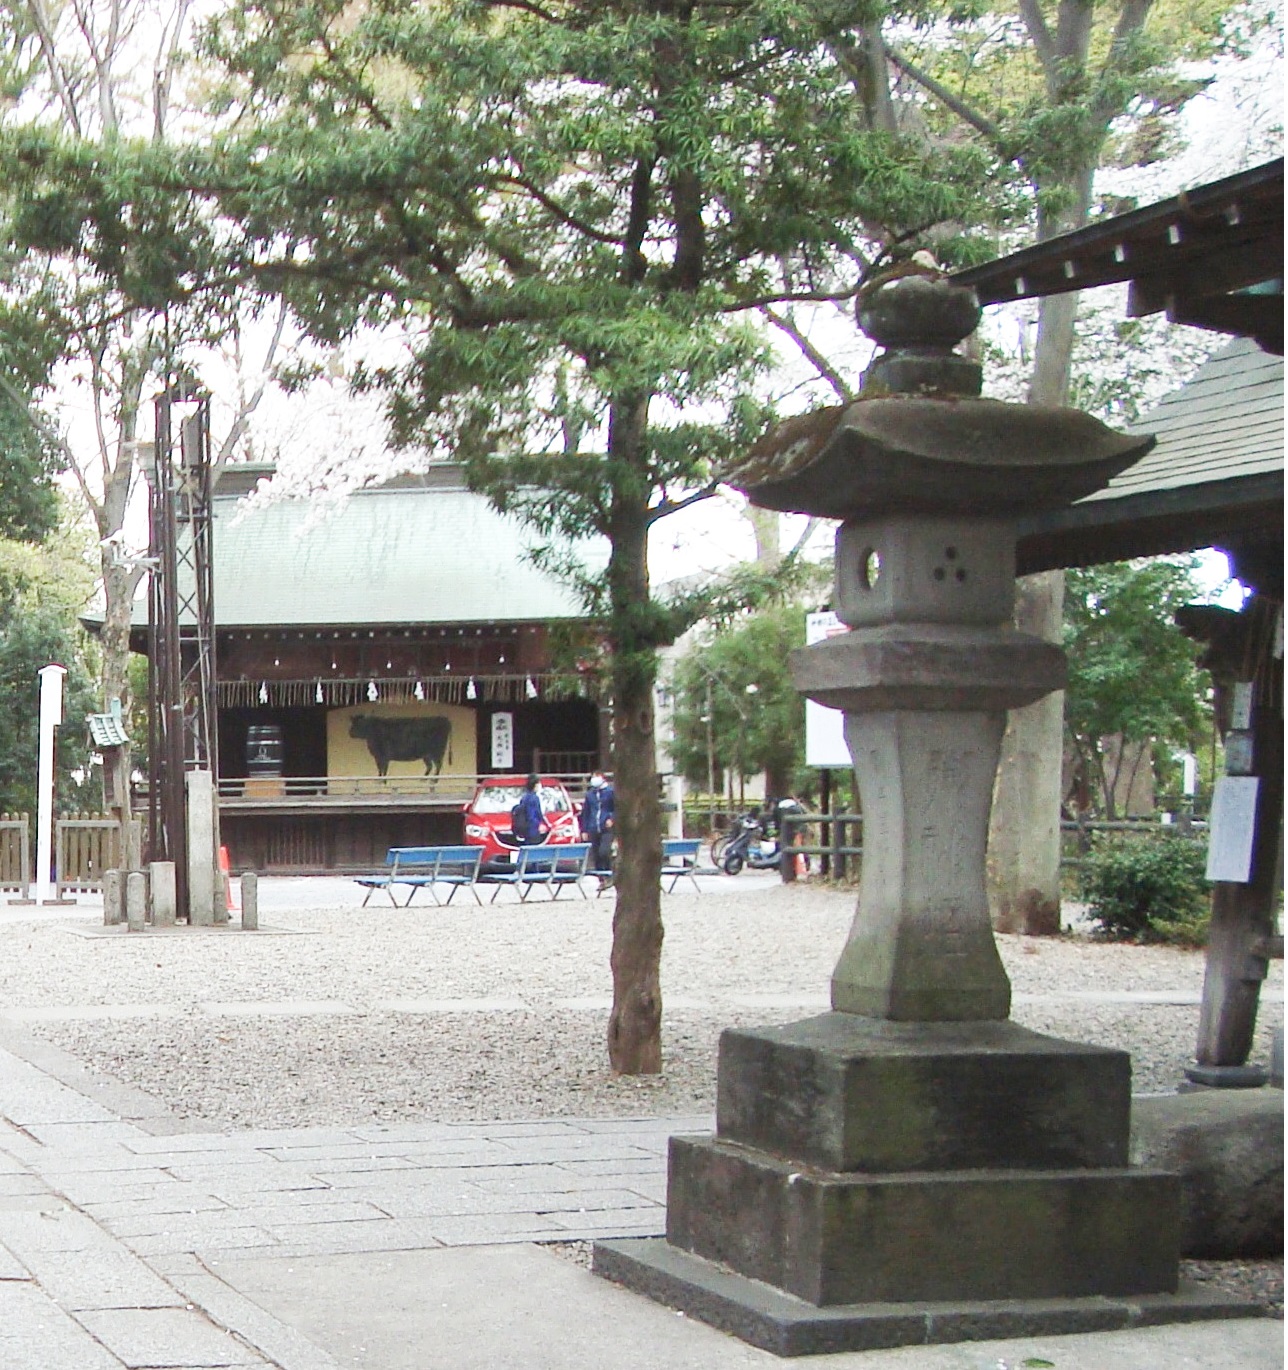 浦和区の調神社の三つ穴灯篭 手水舎の隣